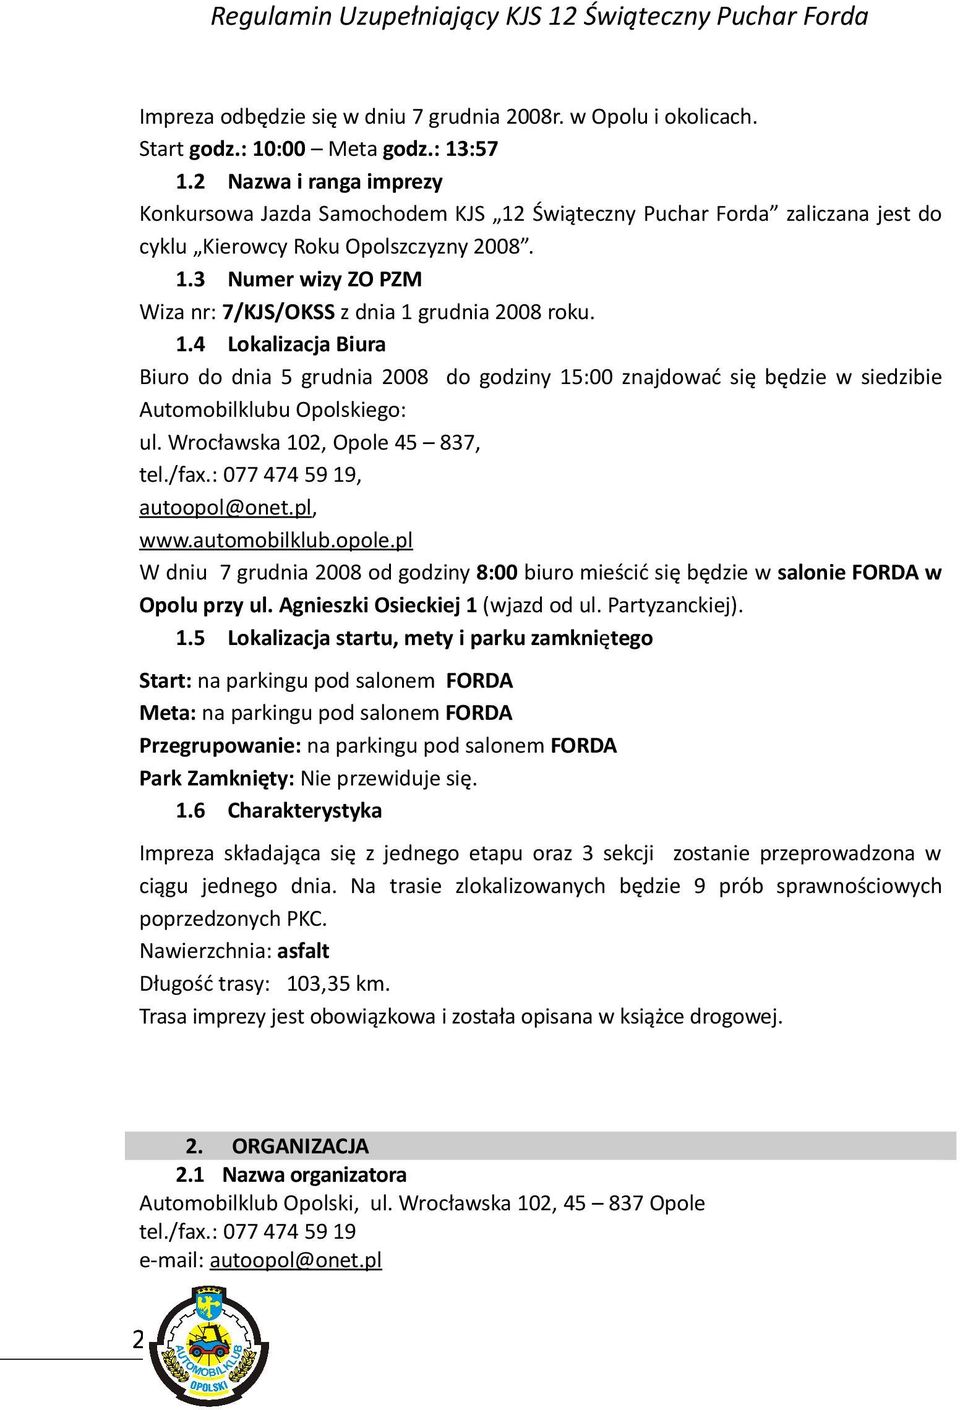 1.4 Lokalizacja Biura Biuro do dnia 5 grudnia 2008 do godziny 15:00 znajdować się będzie w siedzibie Automobilklubu Opolskiego: ul. Wrocławska 102, Opole 45 837, tel./fax.